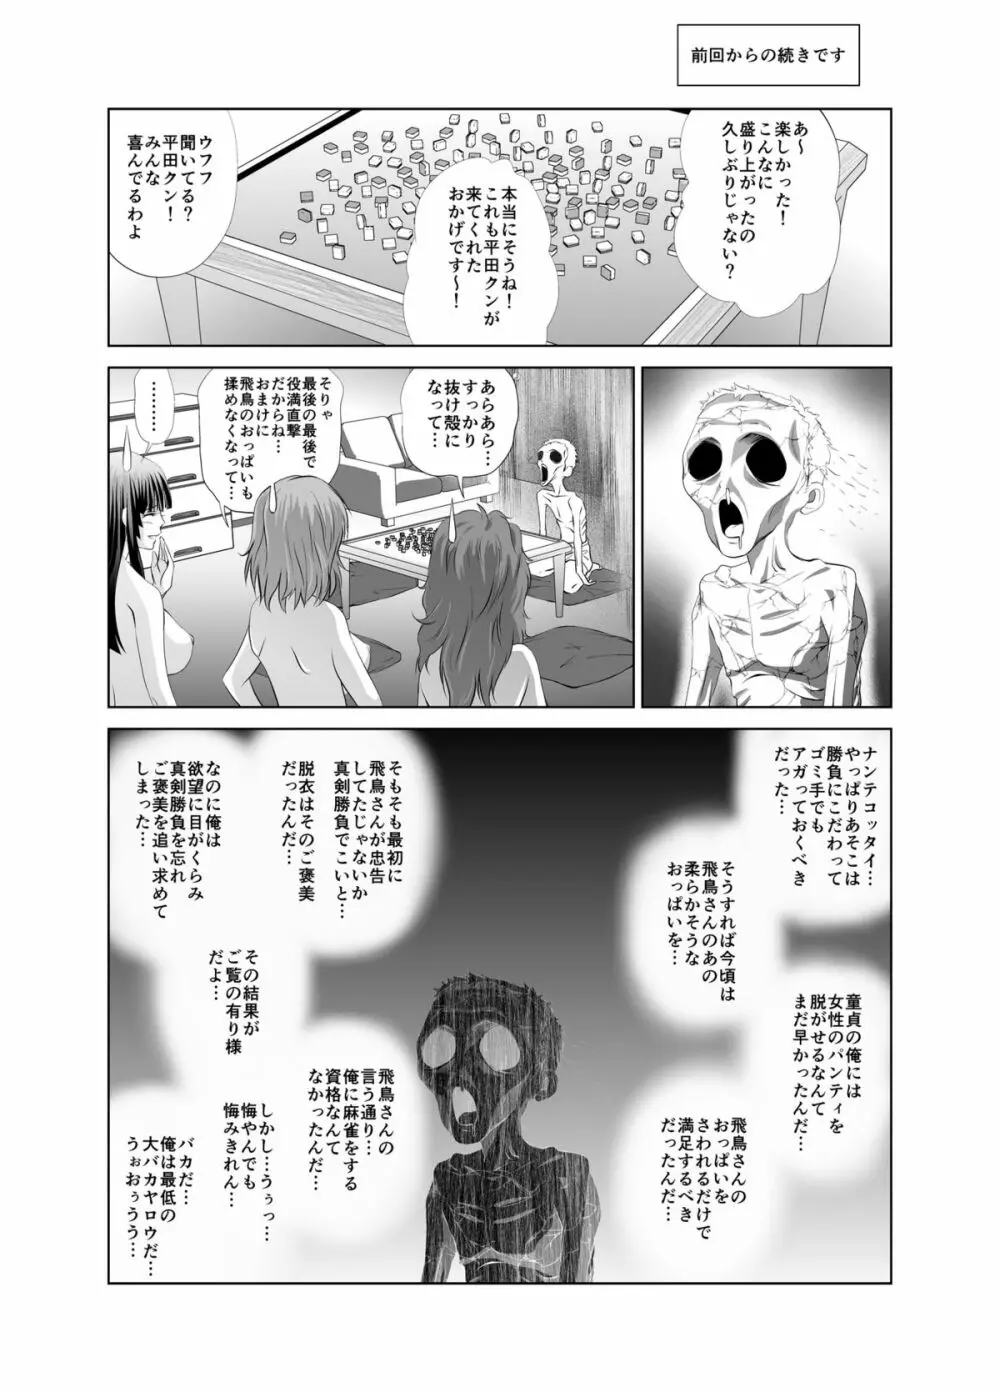 脱衣麻雀～漫画編～【完成版】 29ページ